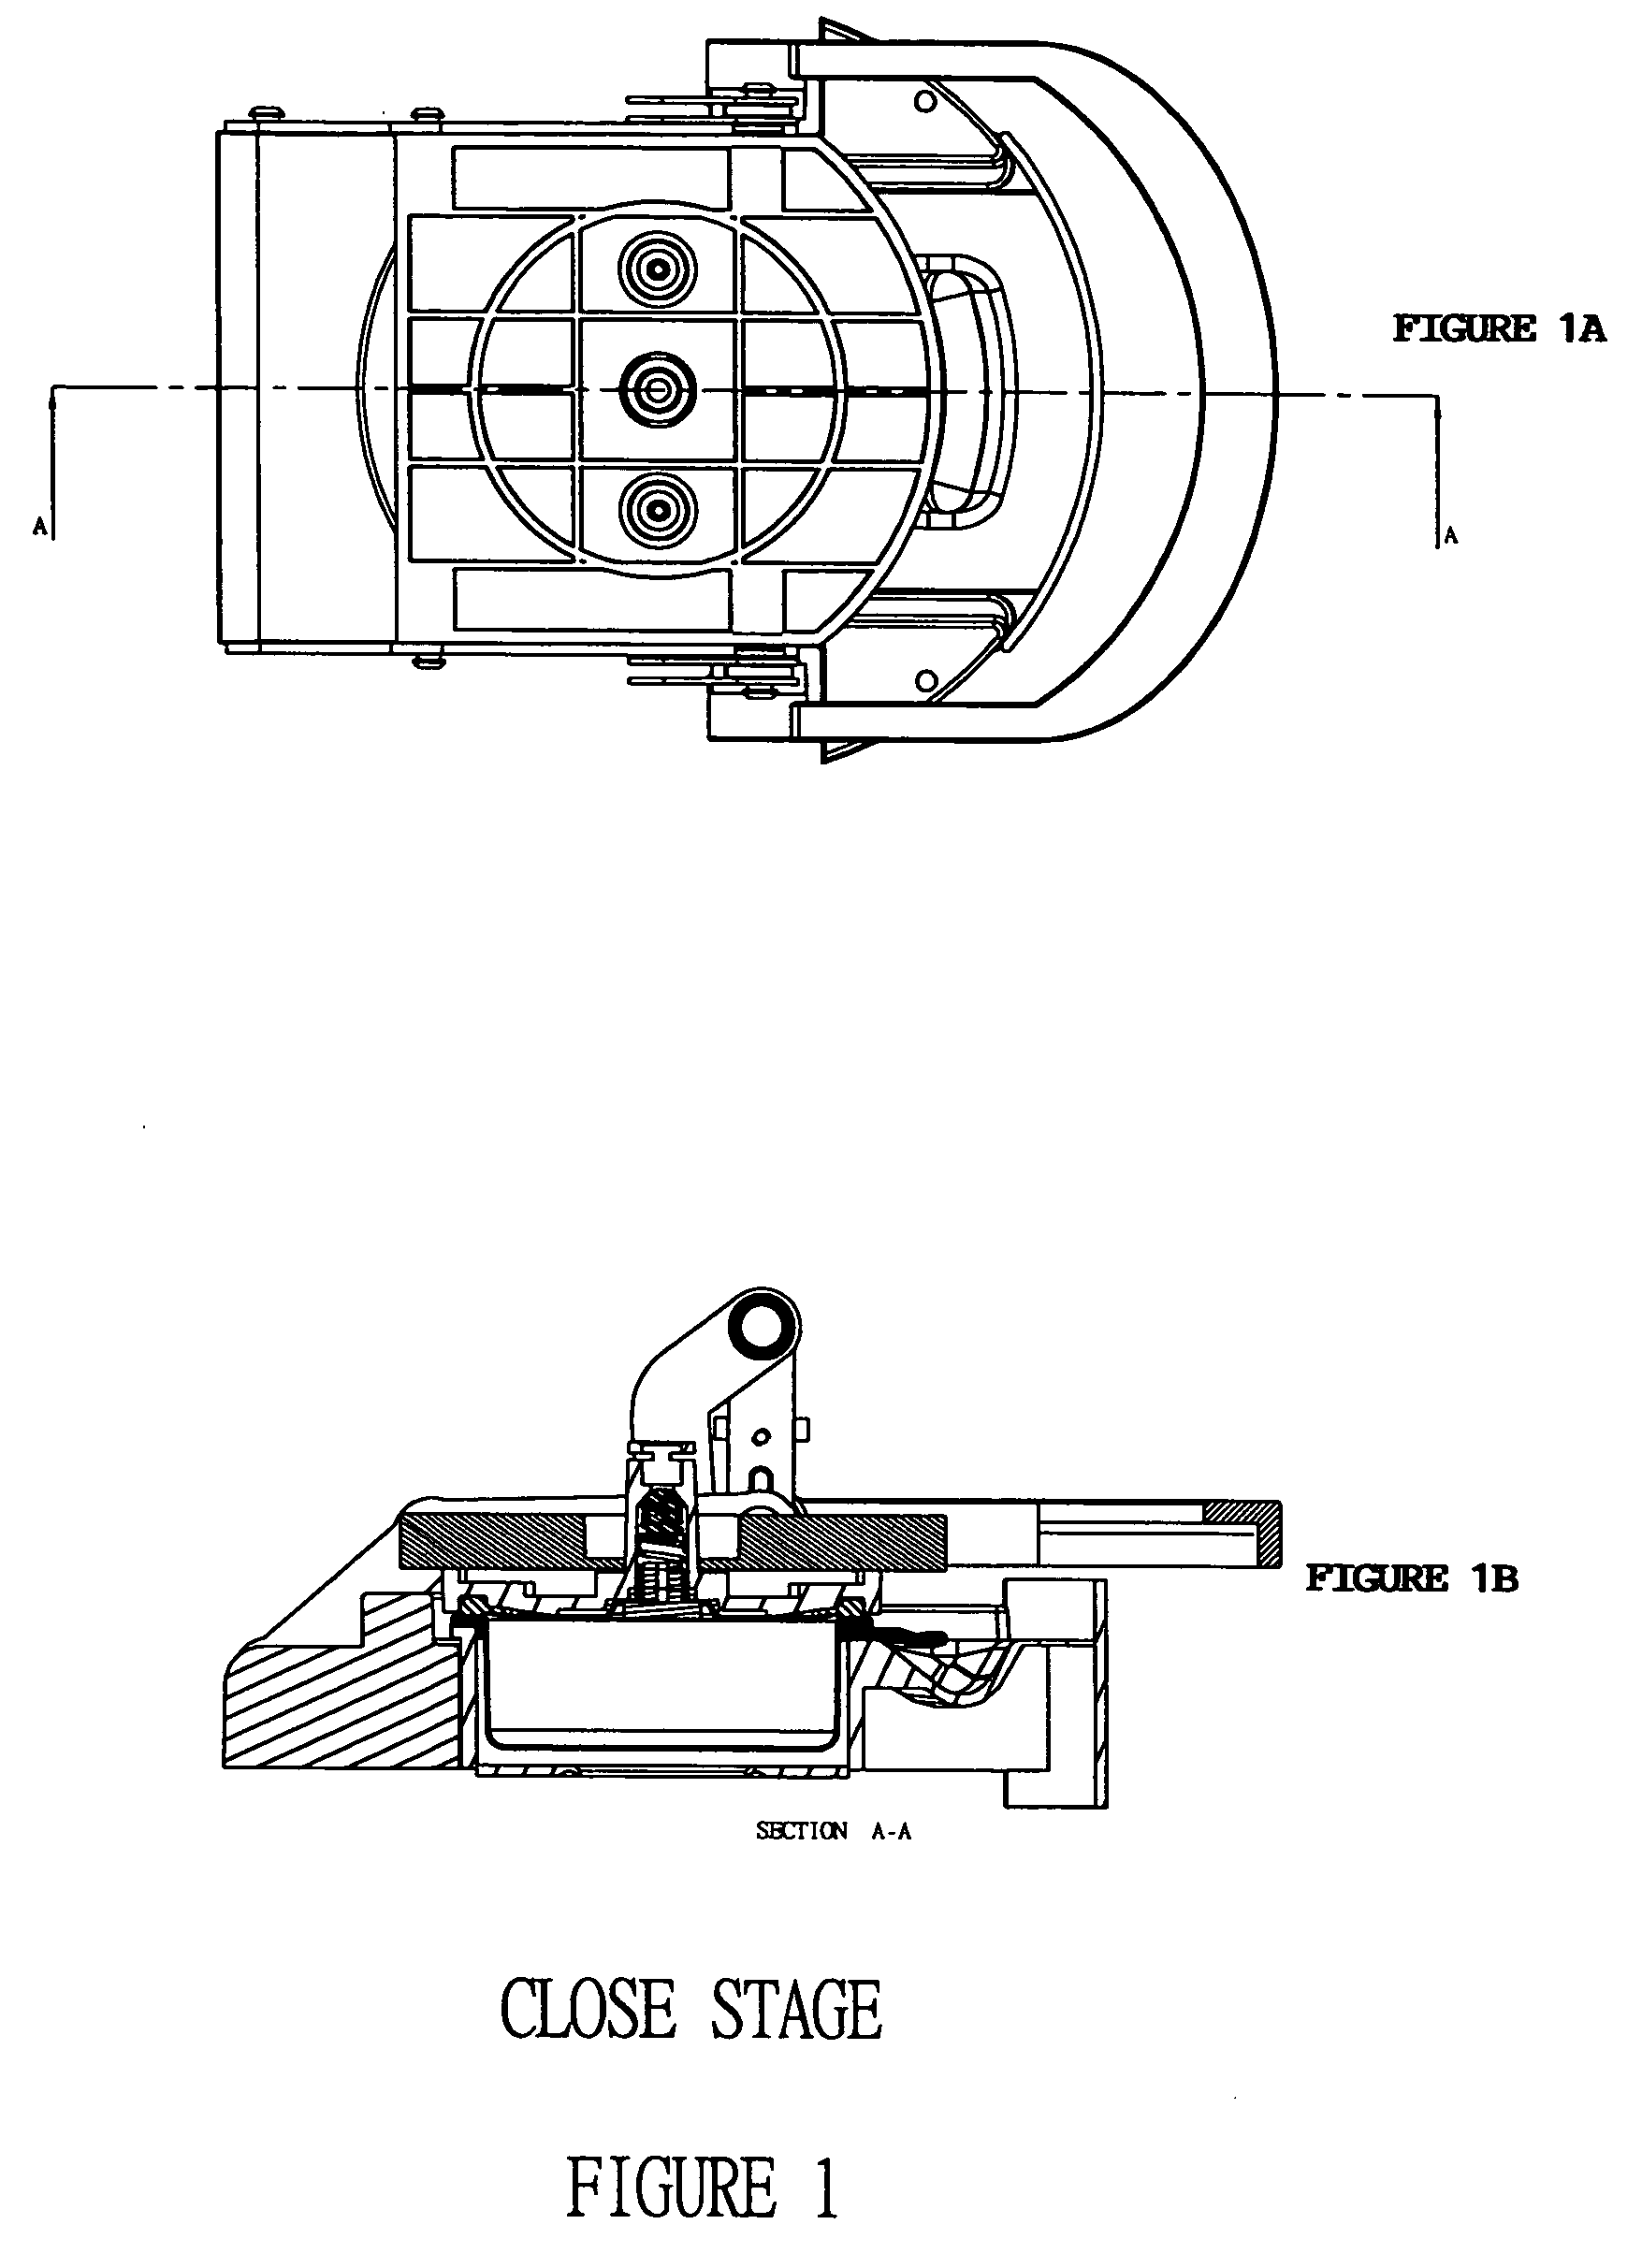 Cabinet design of filter holder for pressurized espresso machines